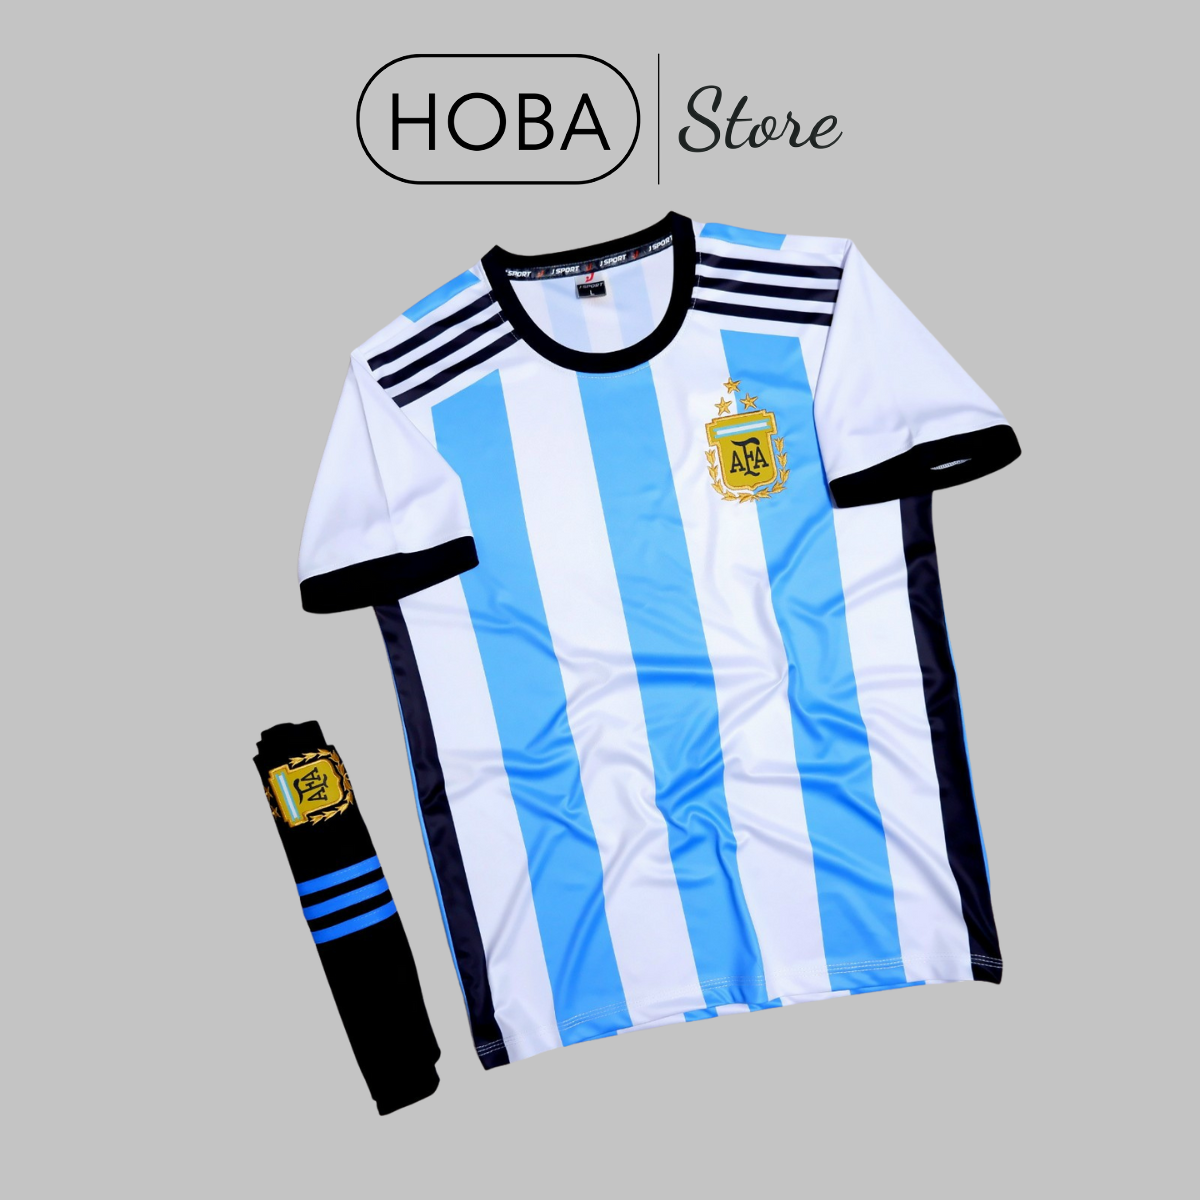 Được trang bị những màu sắc và họa tiết độc đáo, chiếc áo bóng đá Argentina này sẽ khiến bạn say mê ngay từ cái nhìn đầu tiên. Áo đá banh có thiết kế hiện đại, kiểu dáng khúc xa, tạo cảm giác thoải mái và tạo động lực cho người mặc. Hãy cùng tìm hiểu thêm về chiếc áo này để hiểu rõ hơn sức hút của nó!